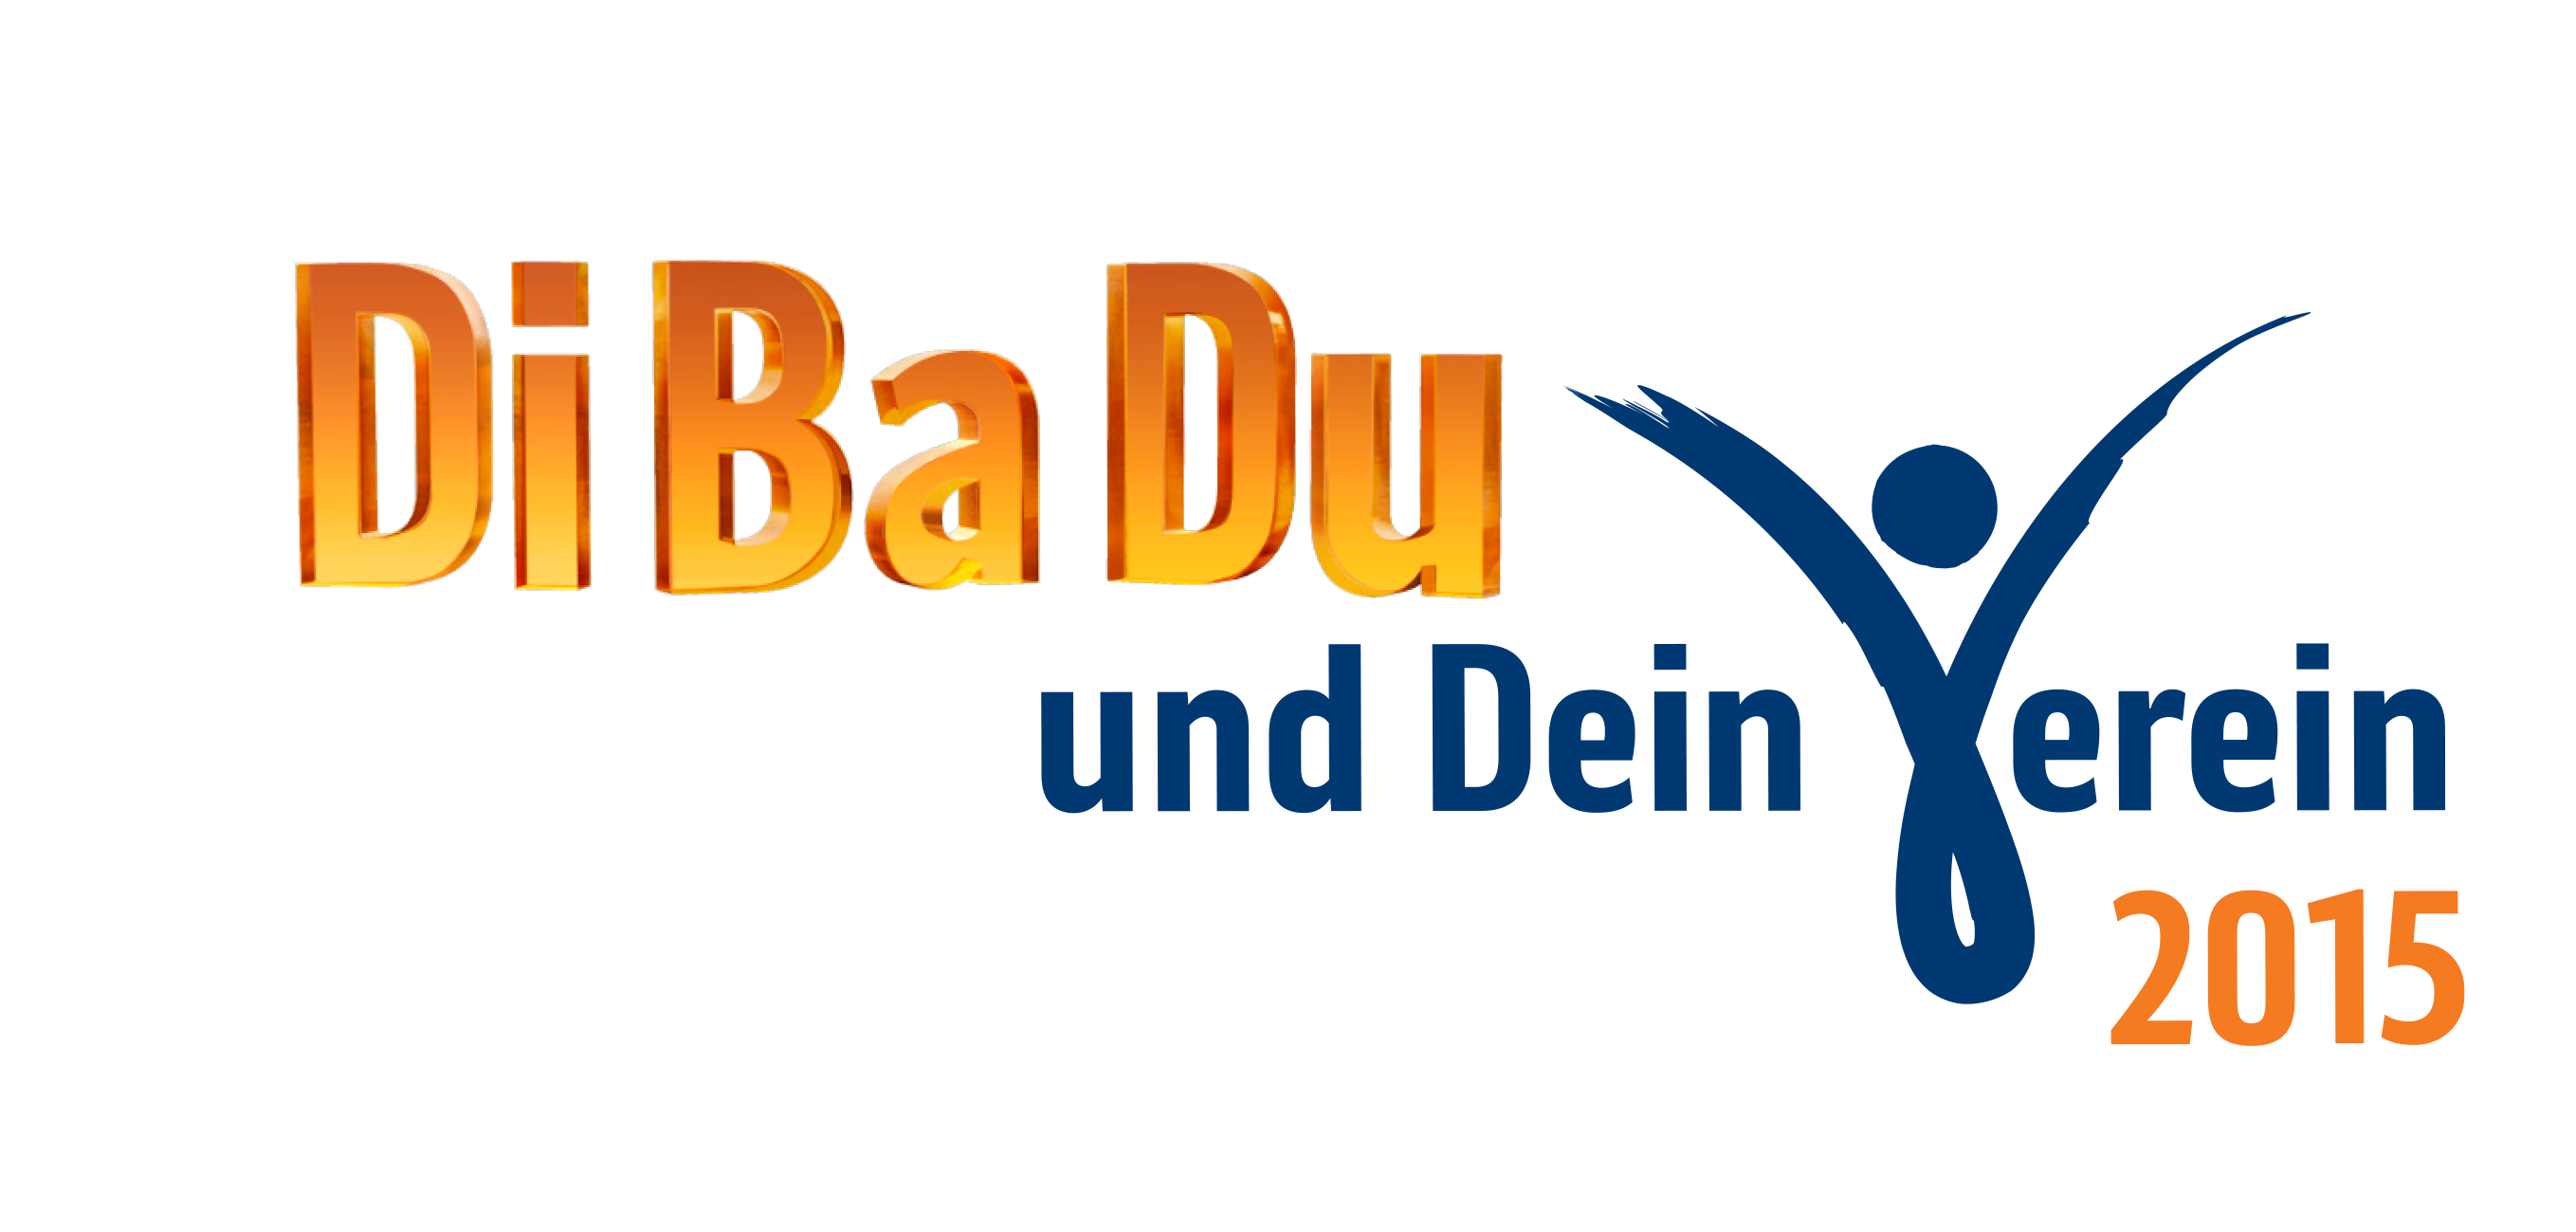 logo_dibadu_und_dein_verein_300dpi